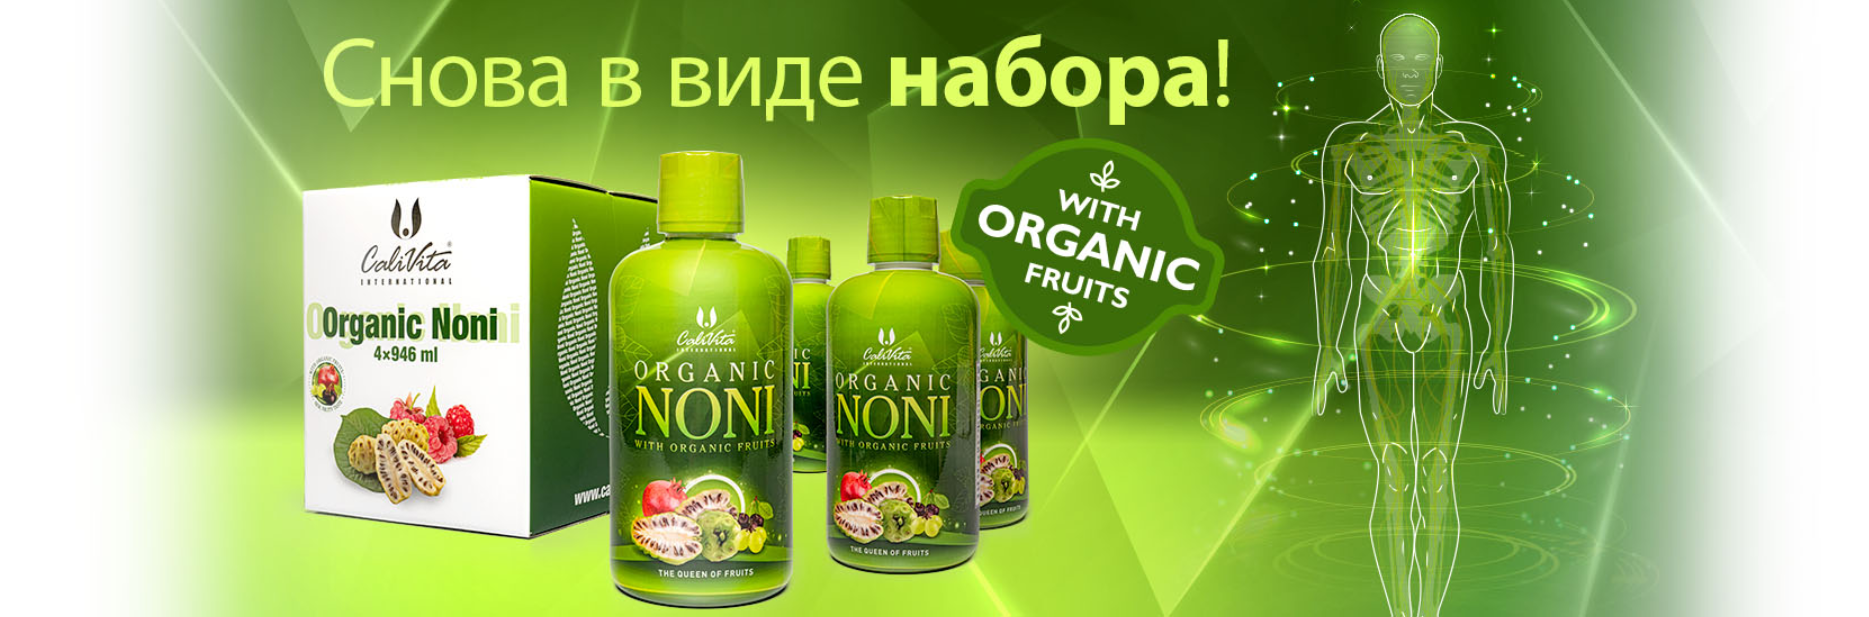 Organic Noni - продвижение